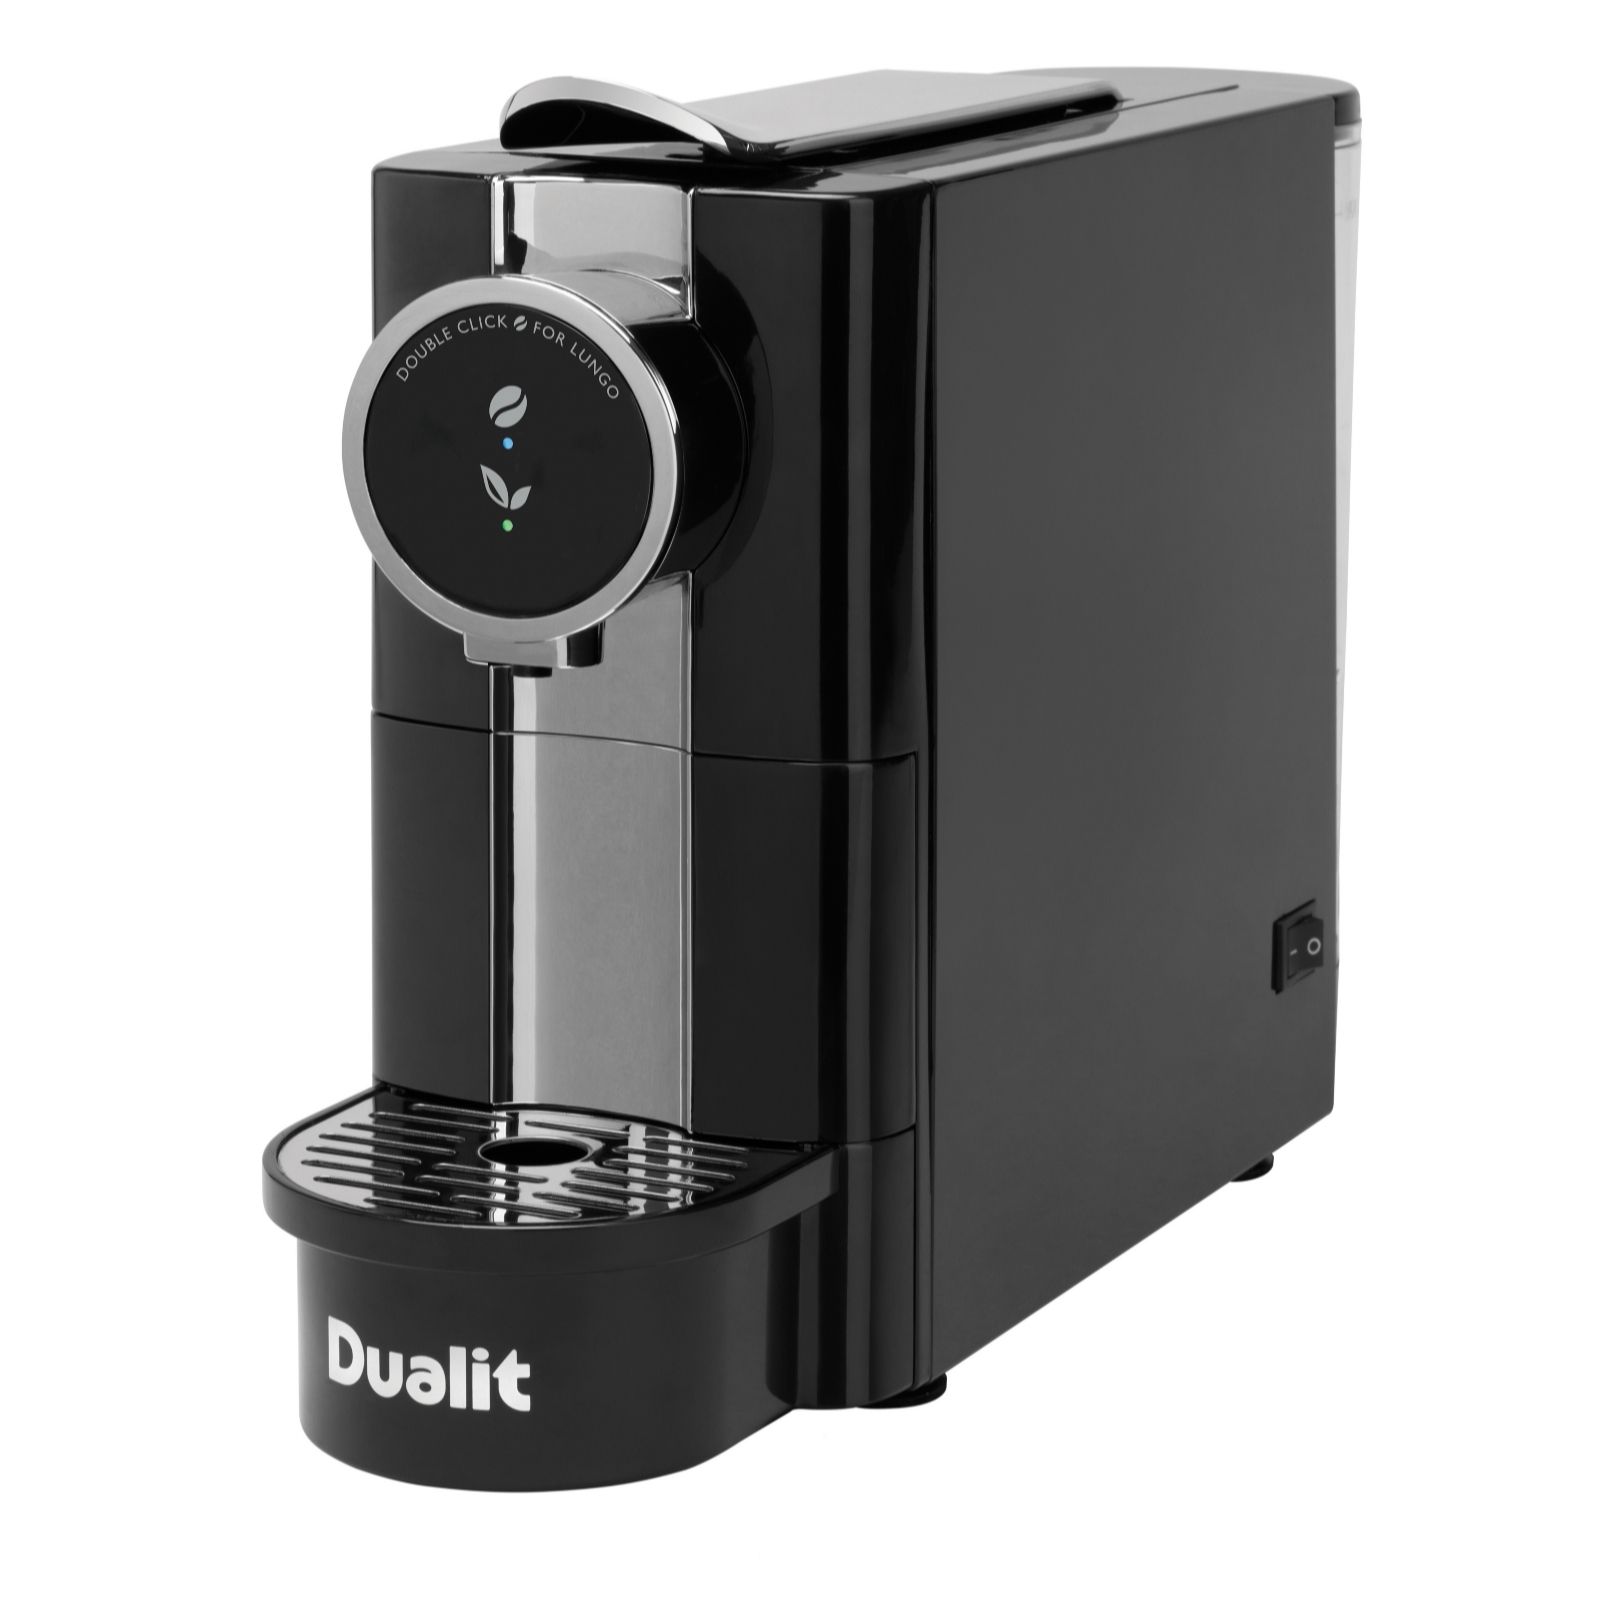 Dualit Café Plus Capsule Machine review